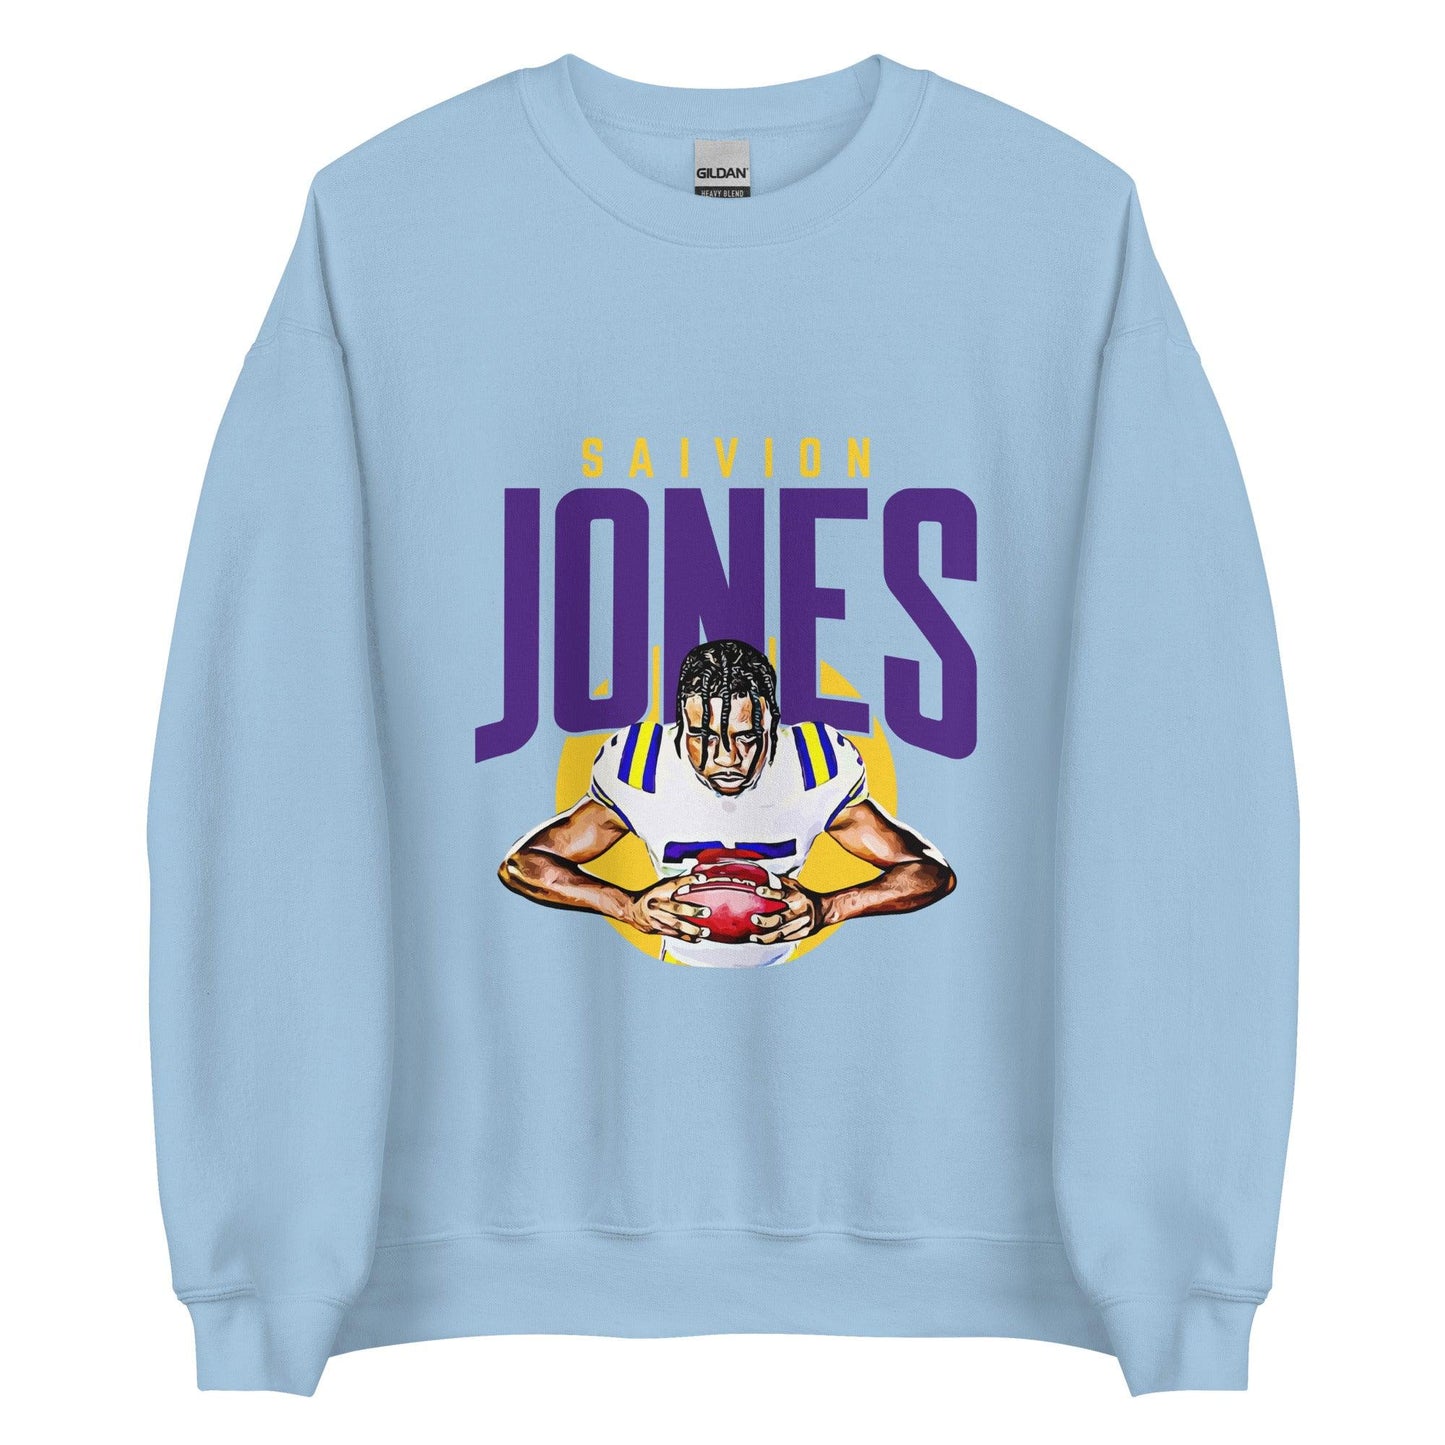 Saivion Jones "Focused" Sweatshirt - Fan Arch